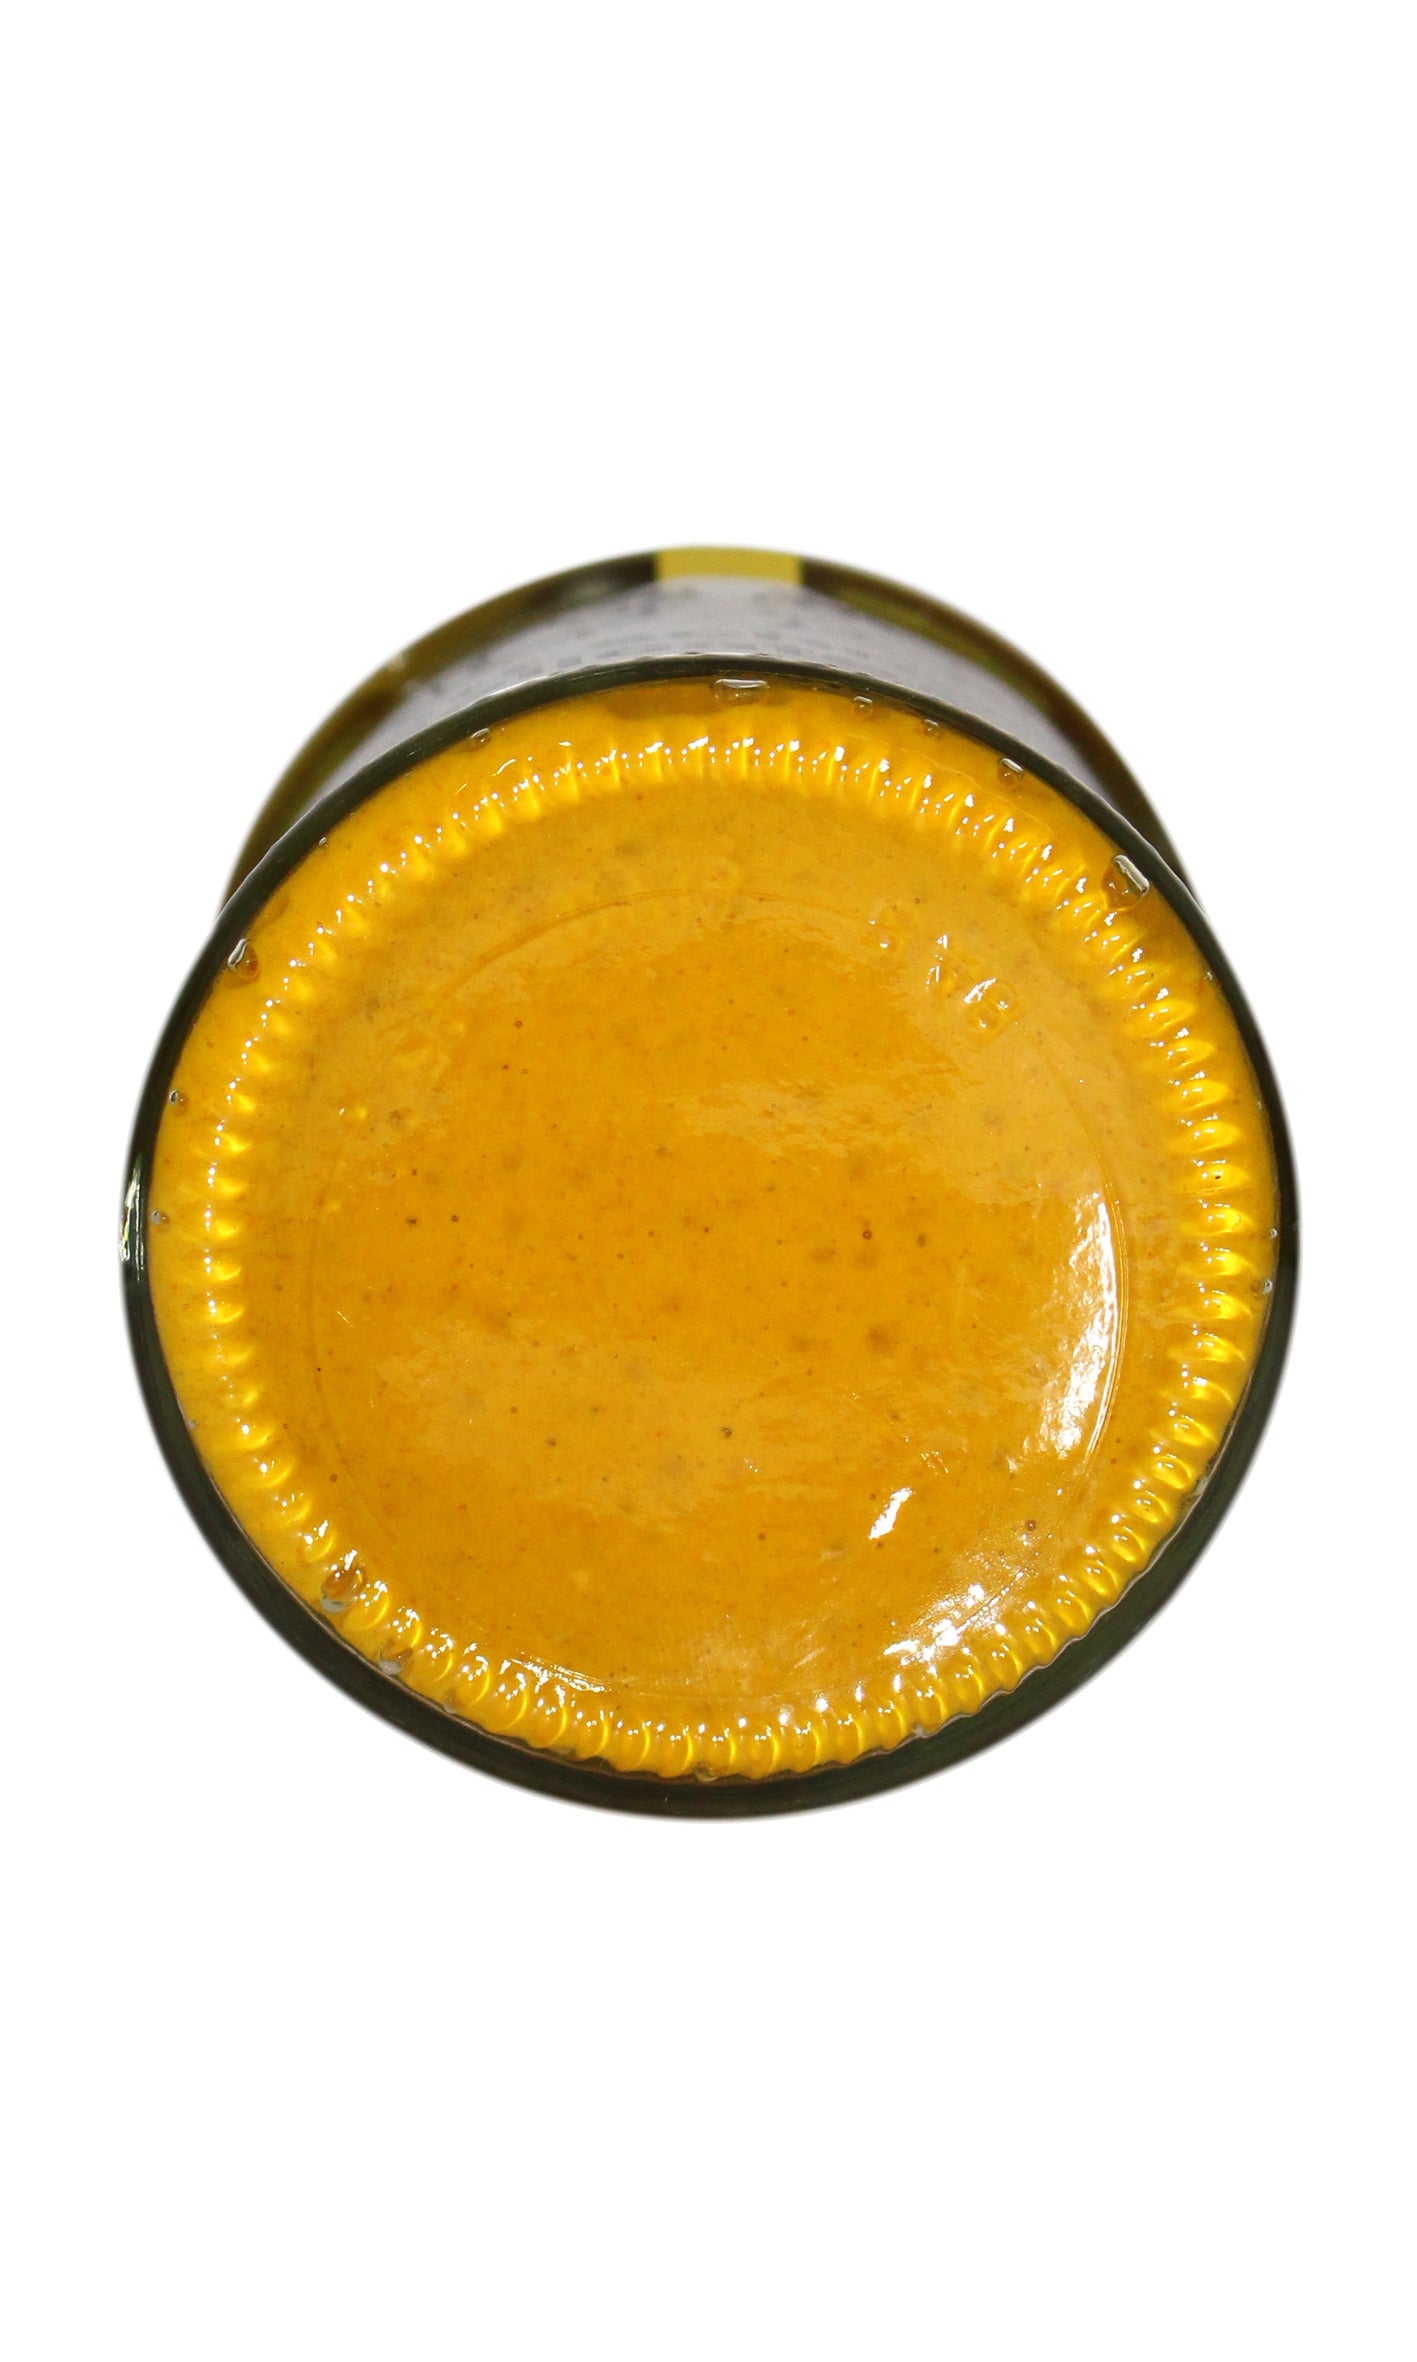 pratt schneiders - Yellow Mustard (200ml)